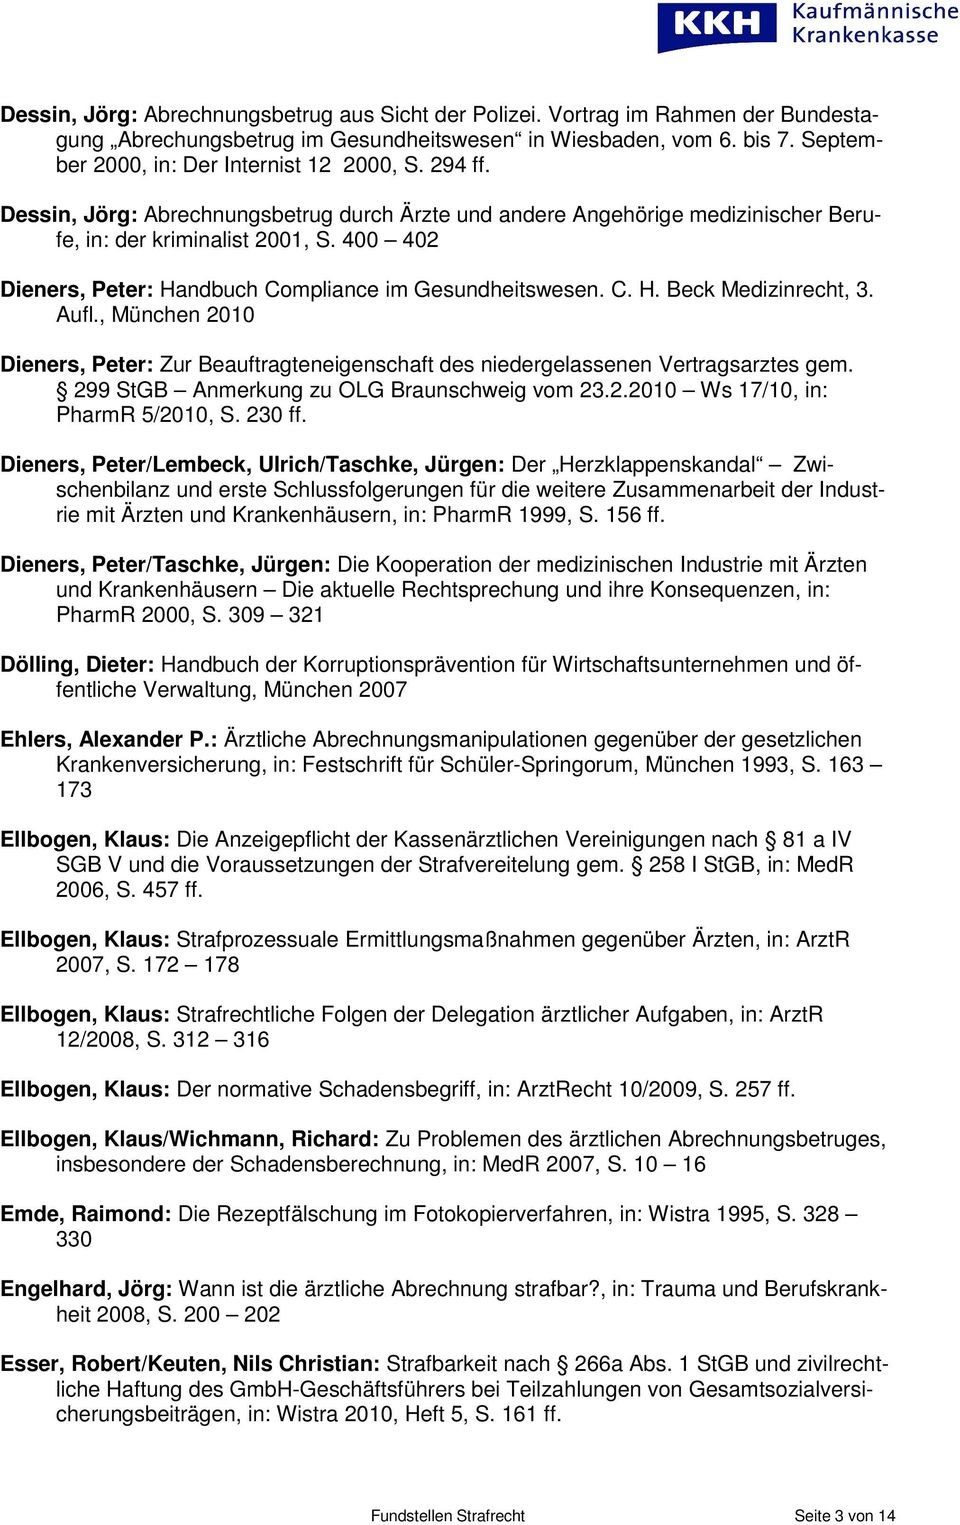 Aufl., München 2010 Dieners, Peter: Zur Beauftragteneigenschaft des niedergelassenen Vertragsarztes gem. 299 StGB Anmerkung zu OLG Braunschweig vom 23.2.2010 Ws 17/10, in: PharmR 5/2010, S. 230 ff.